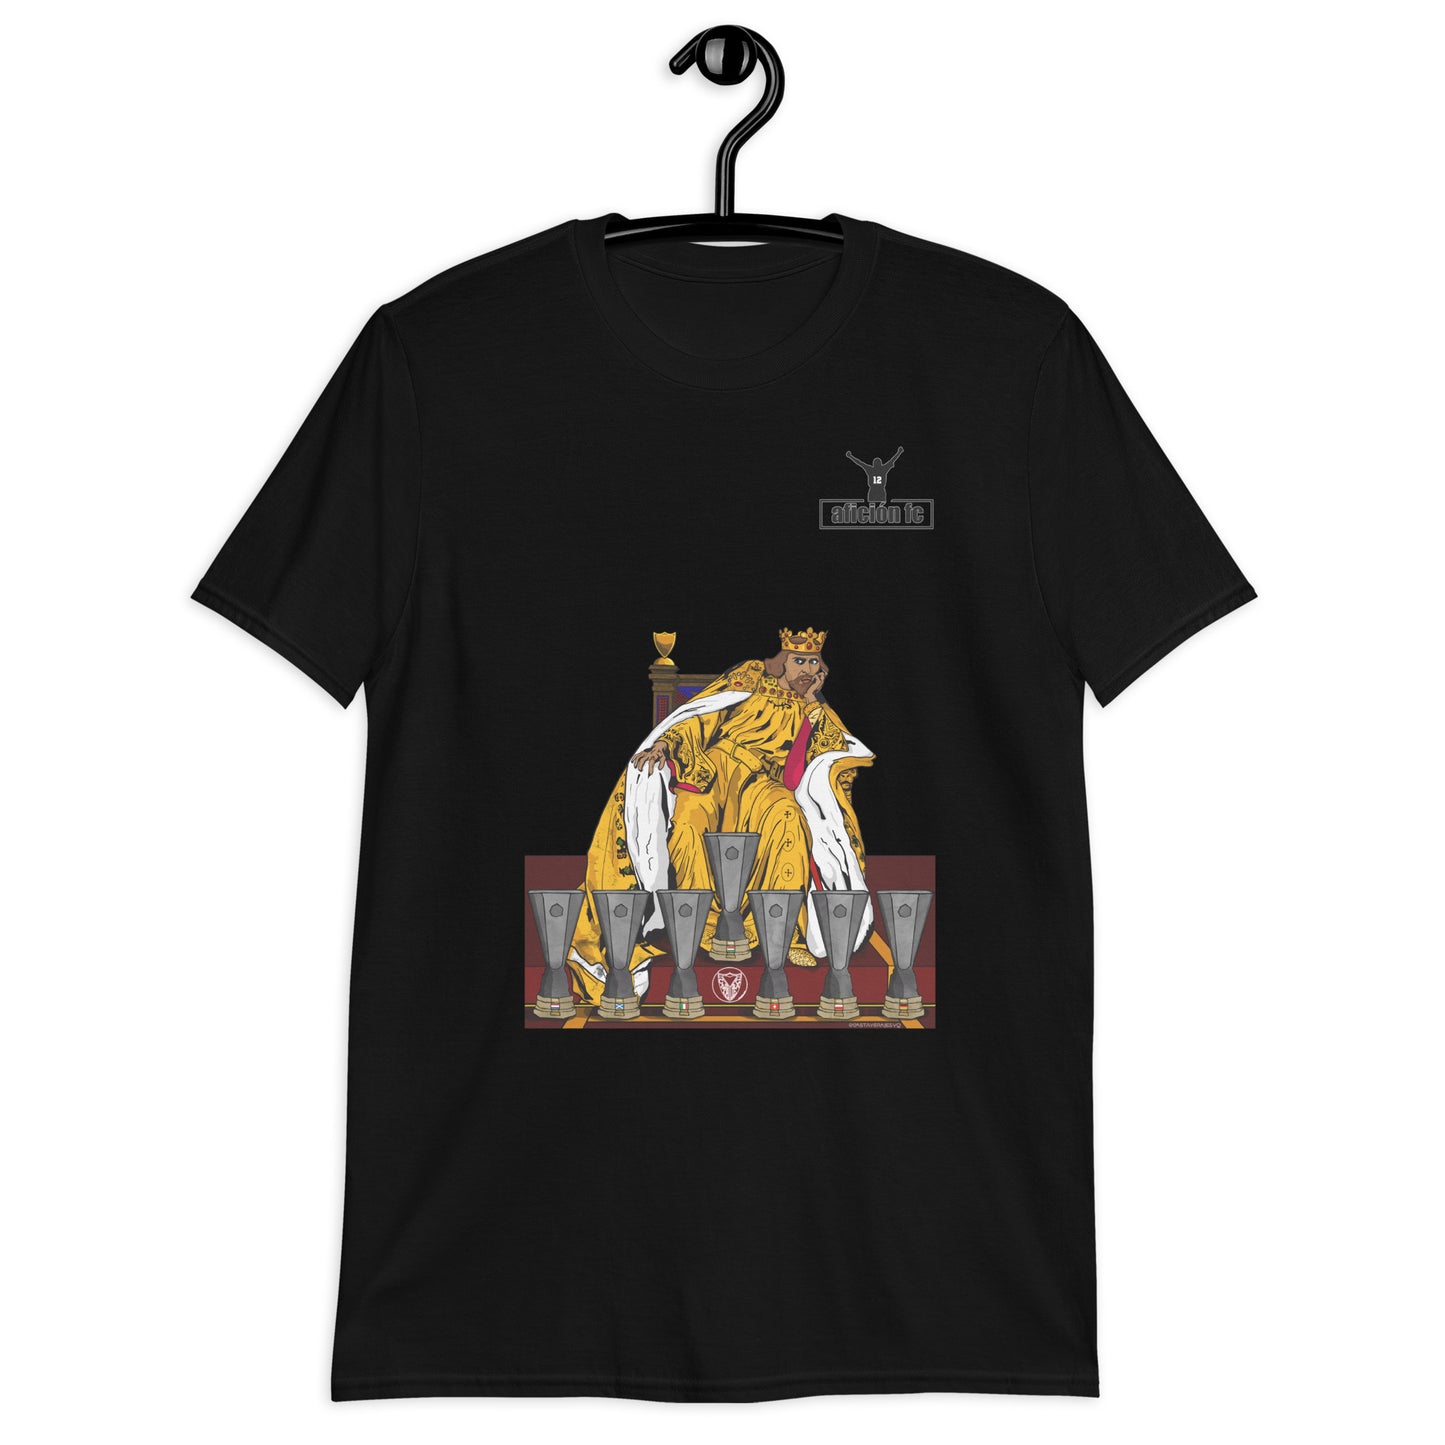 Camiseta Casta y Coraje - El Rey y sus 7 copas